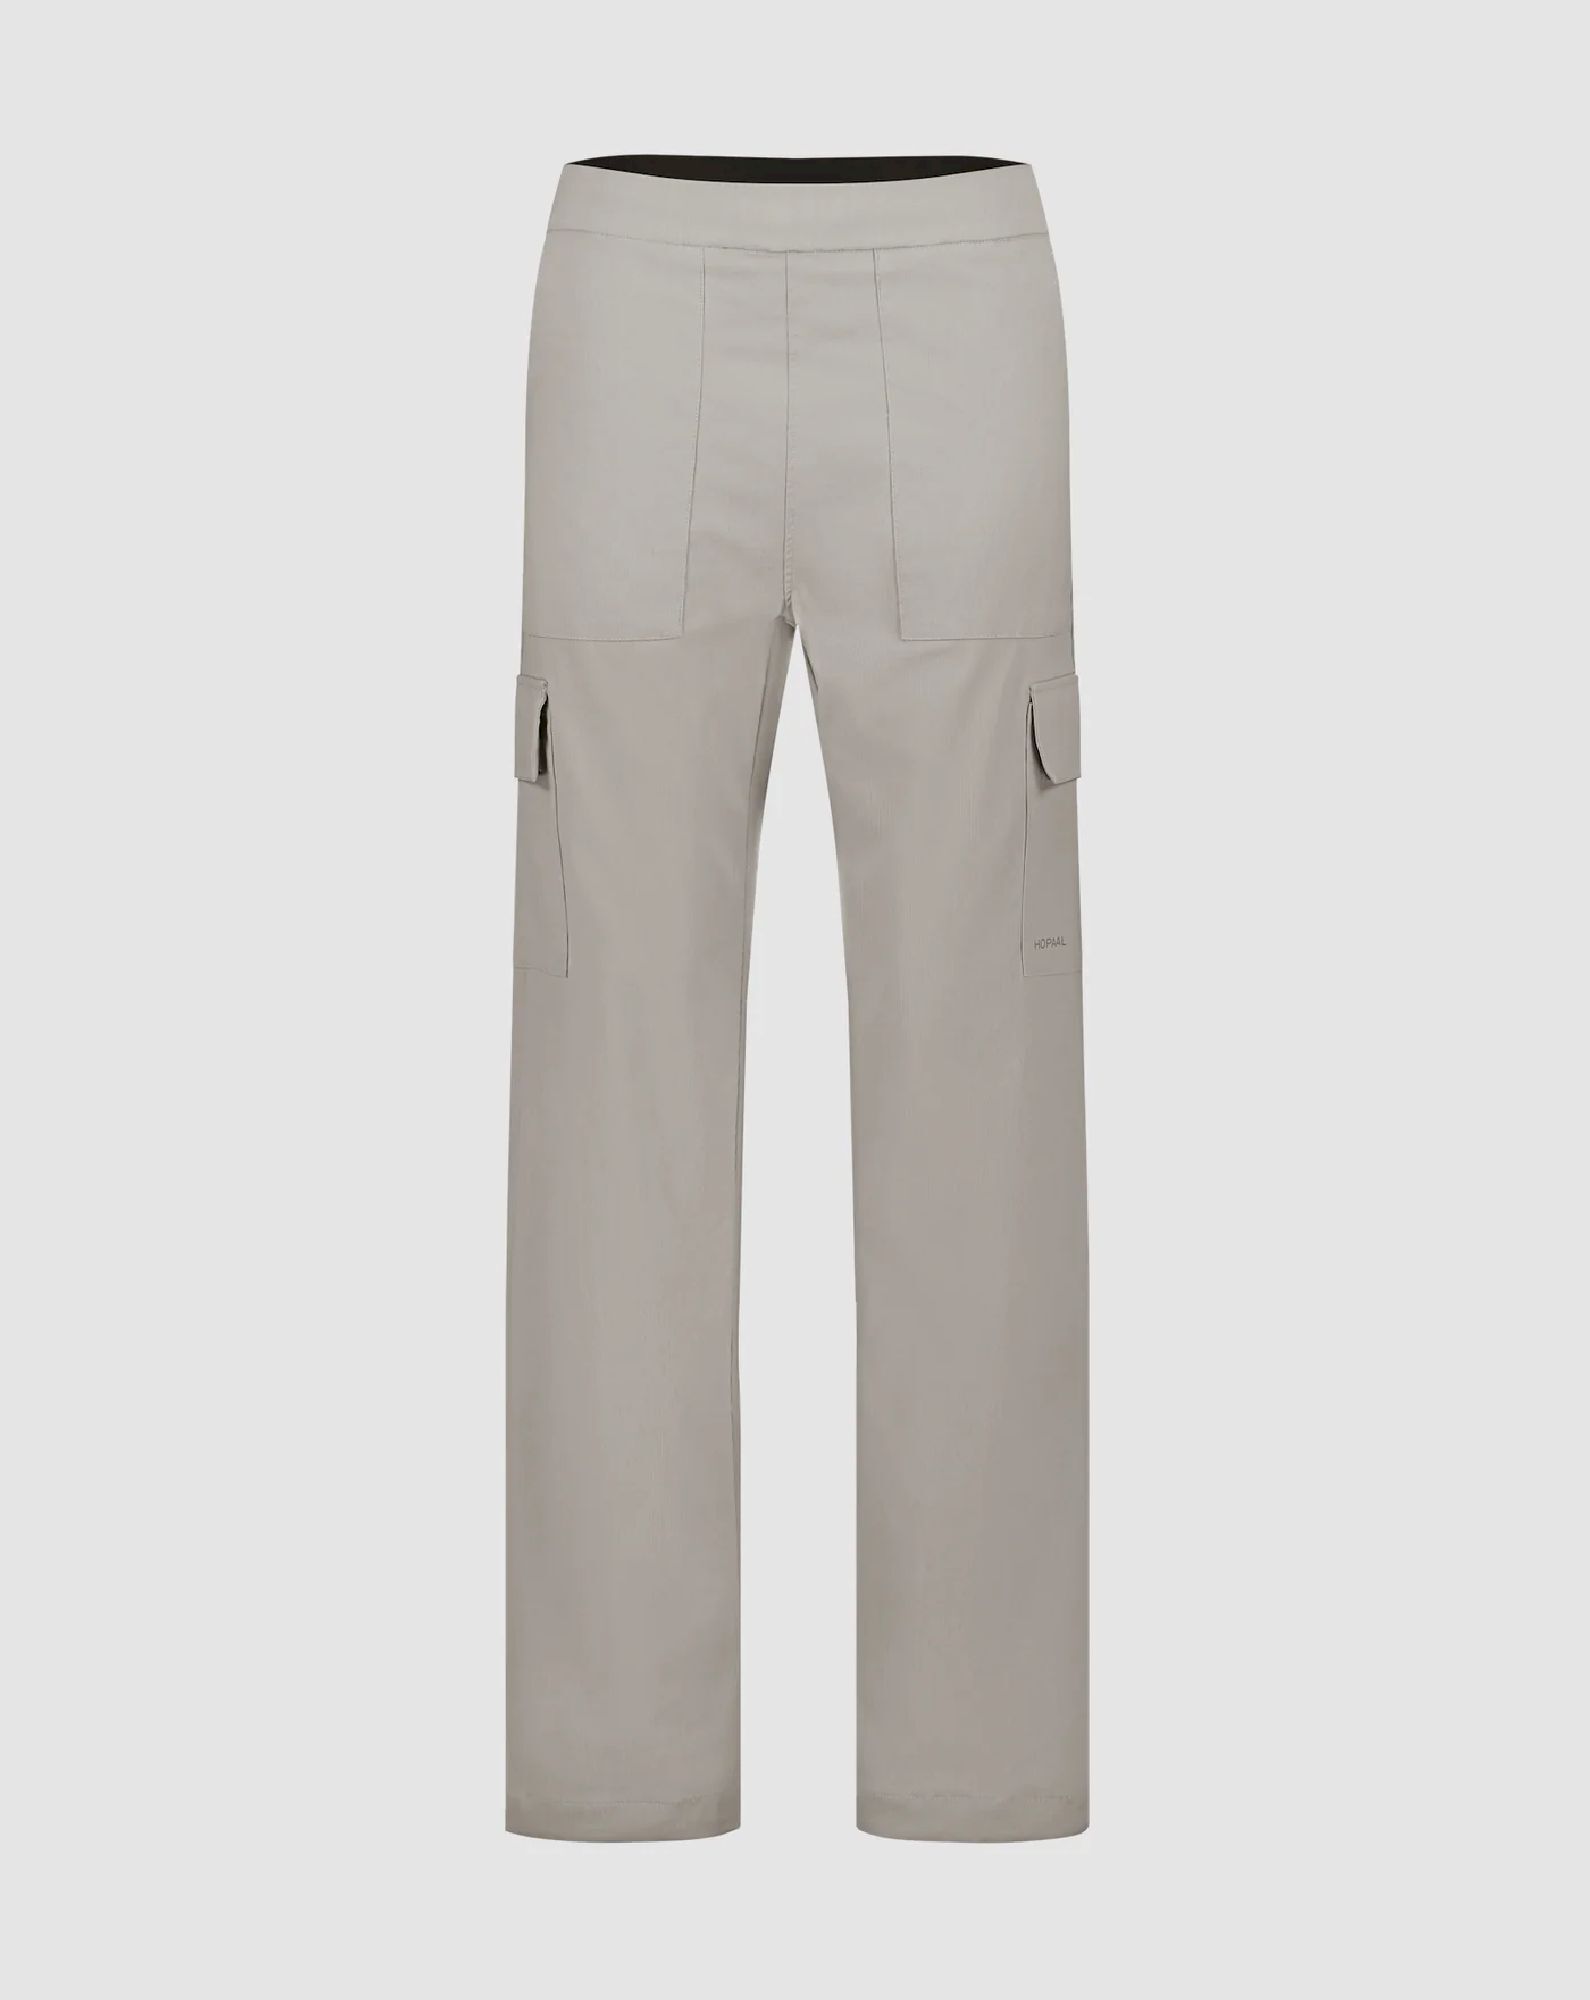 Hopaal Pantalon Multi-Activités - Pantalones de senderismo - Mujer | Hardloop